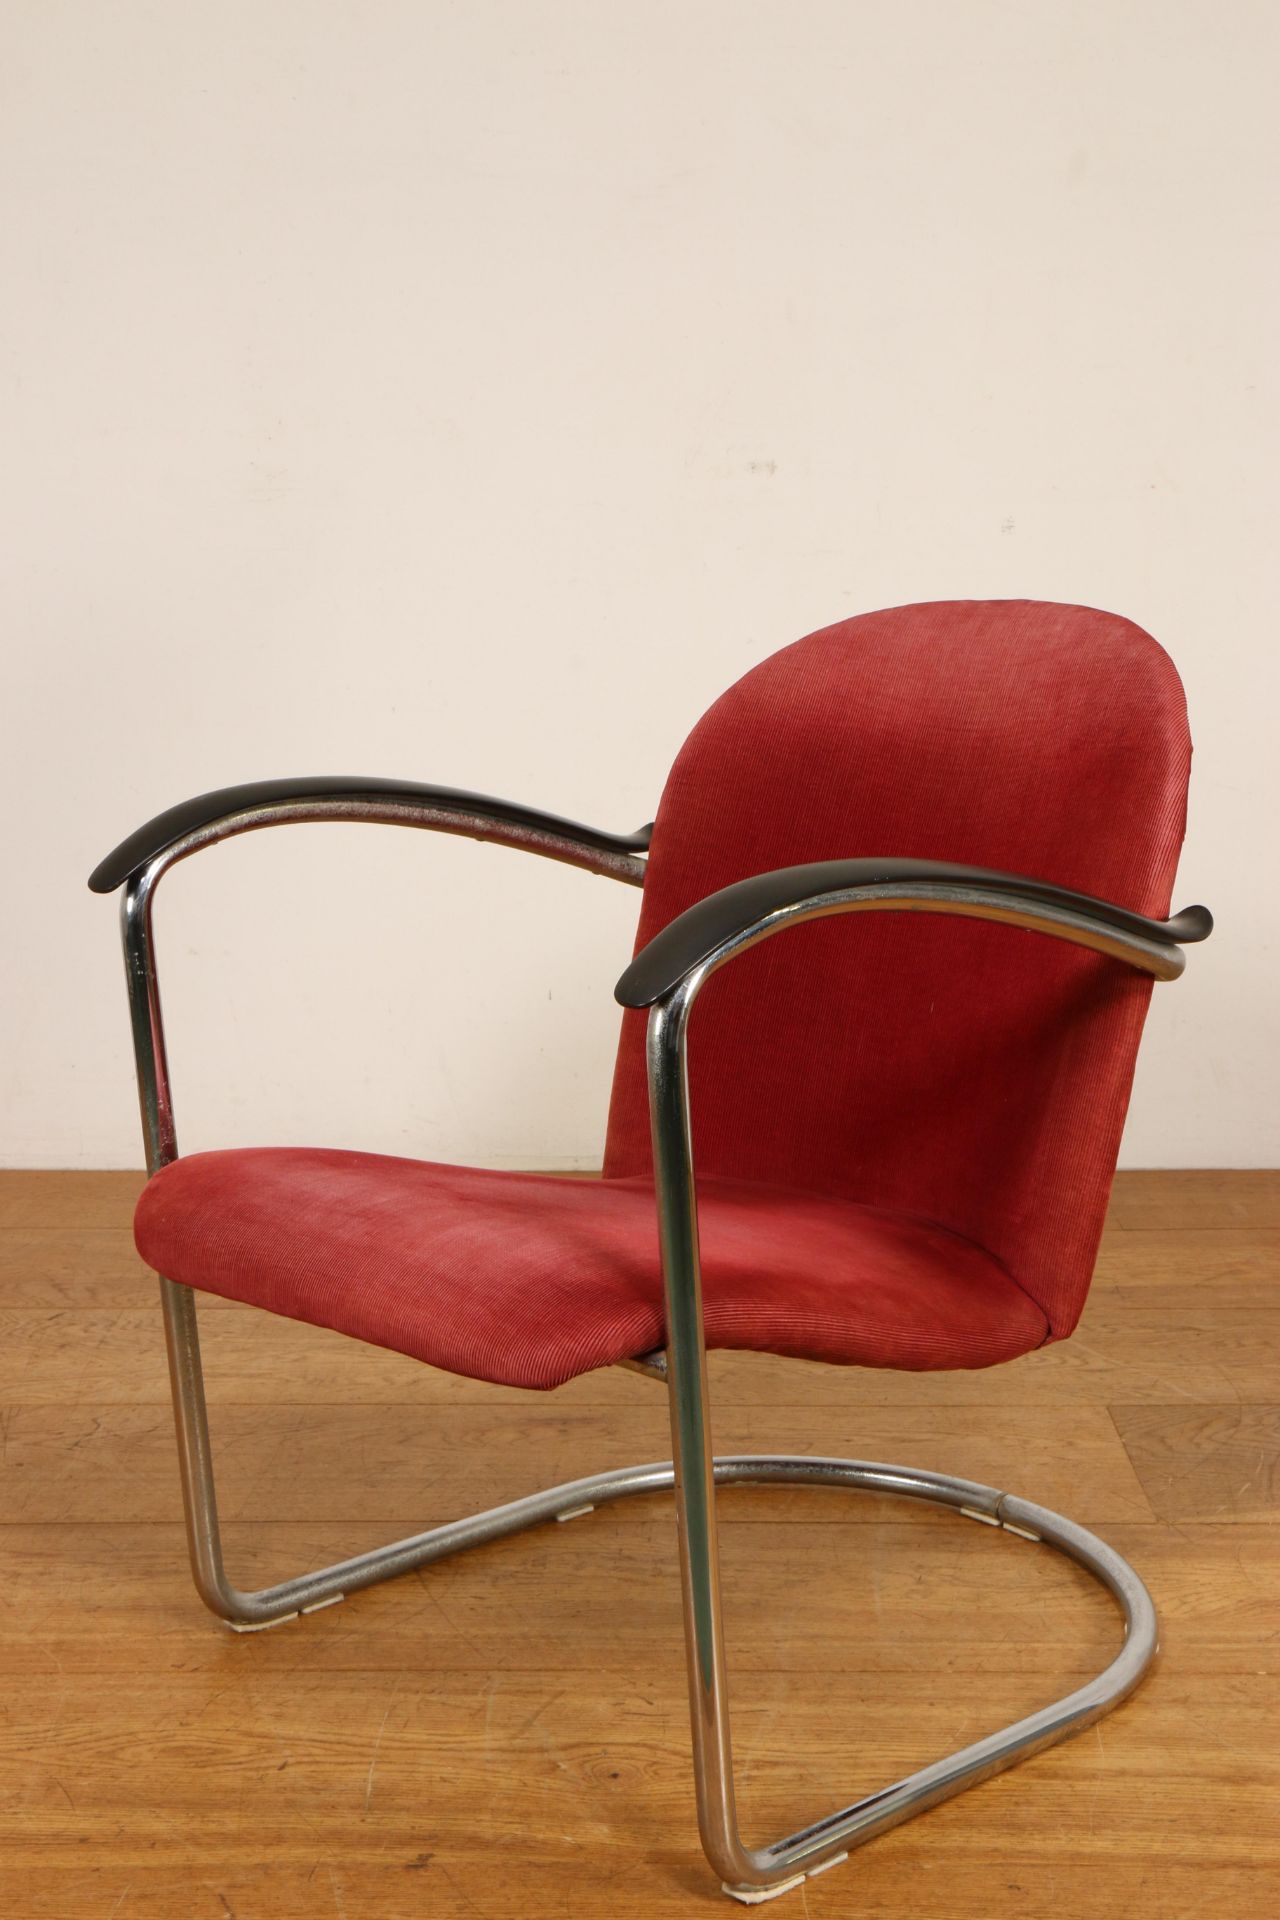 Verchroomd stalen buizenfauteuil, naar '414' fauteuil van W.H. Gispen, - Bild 3 aus 3